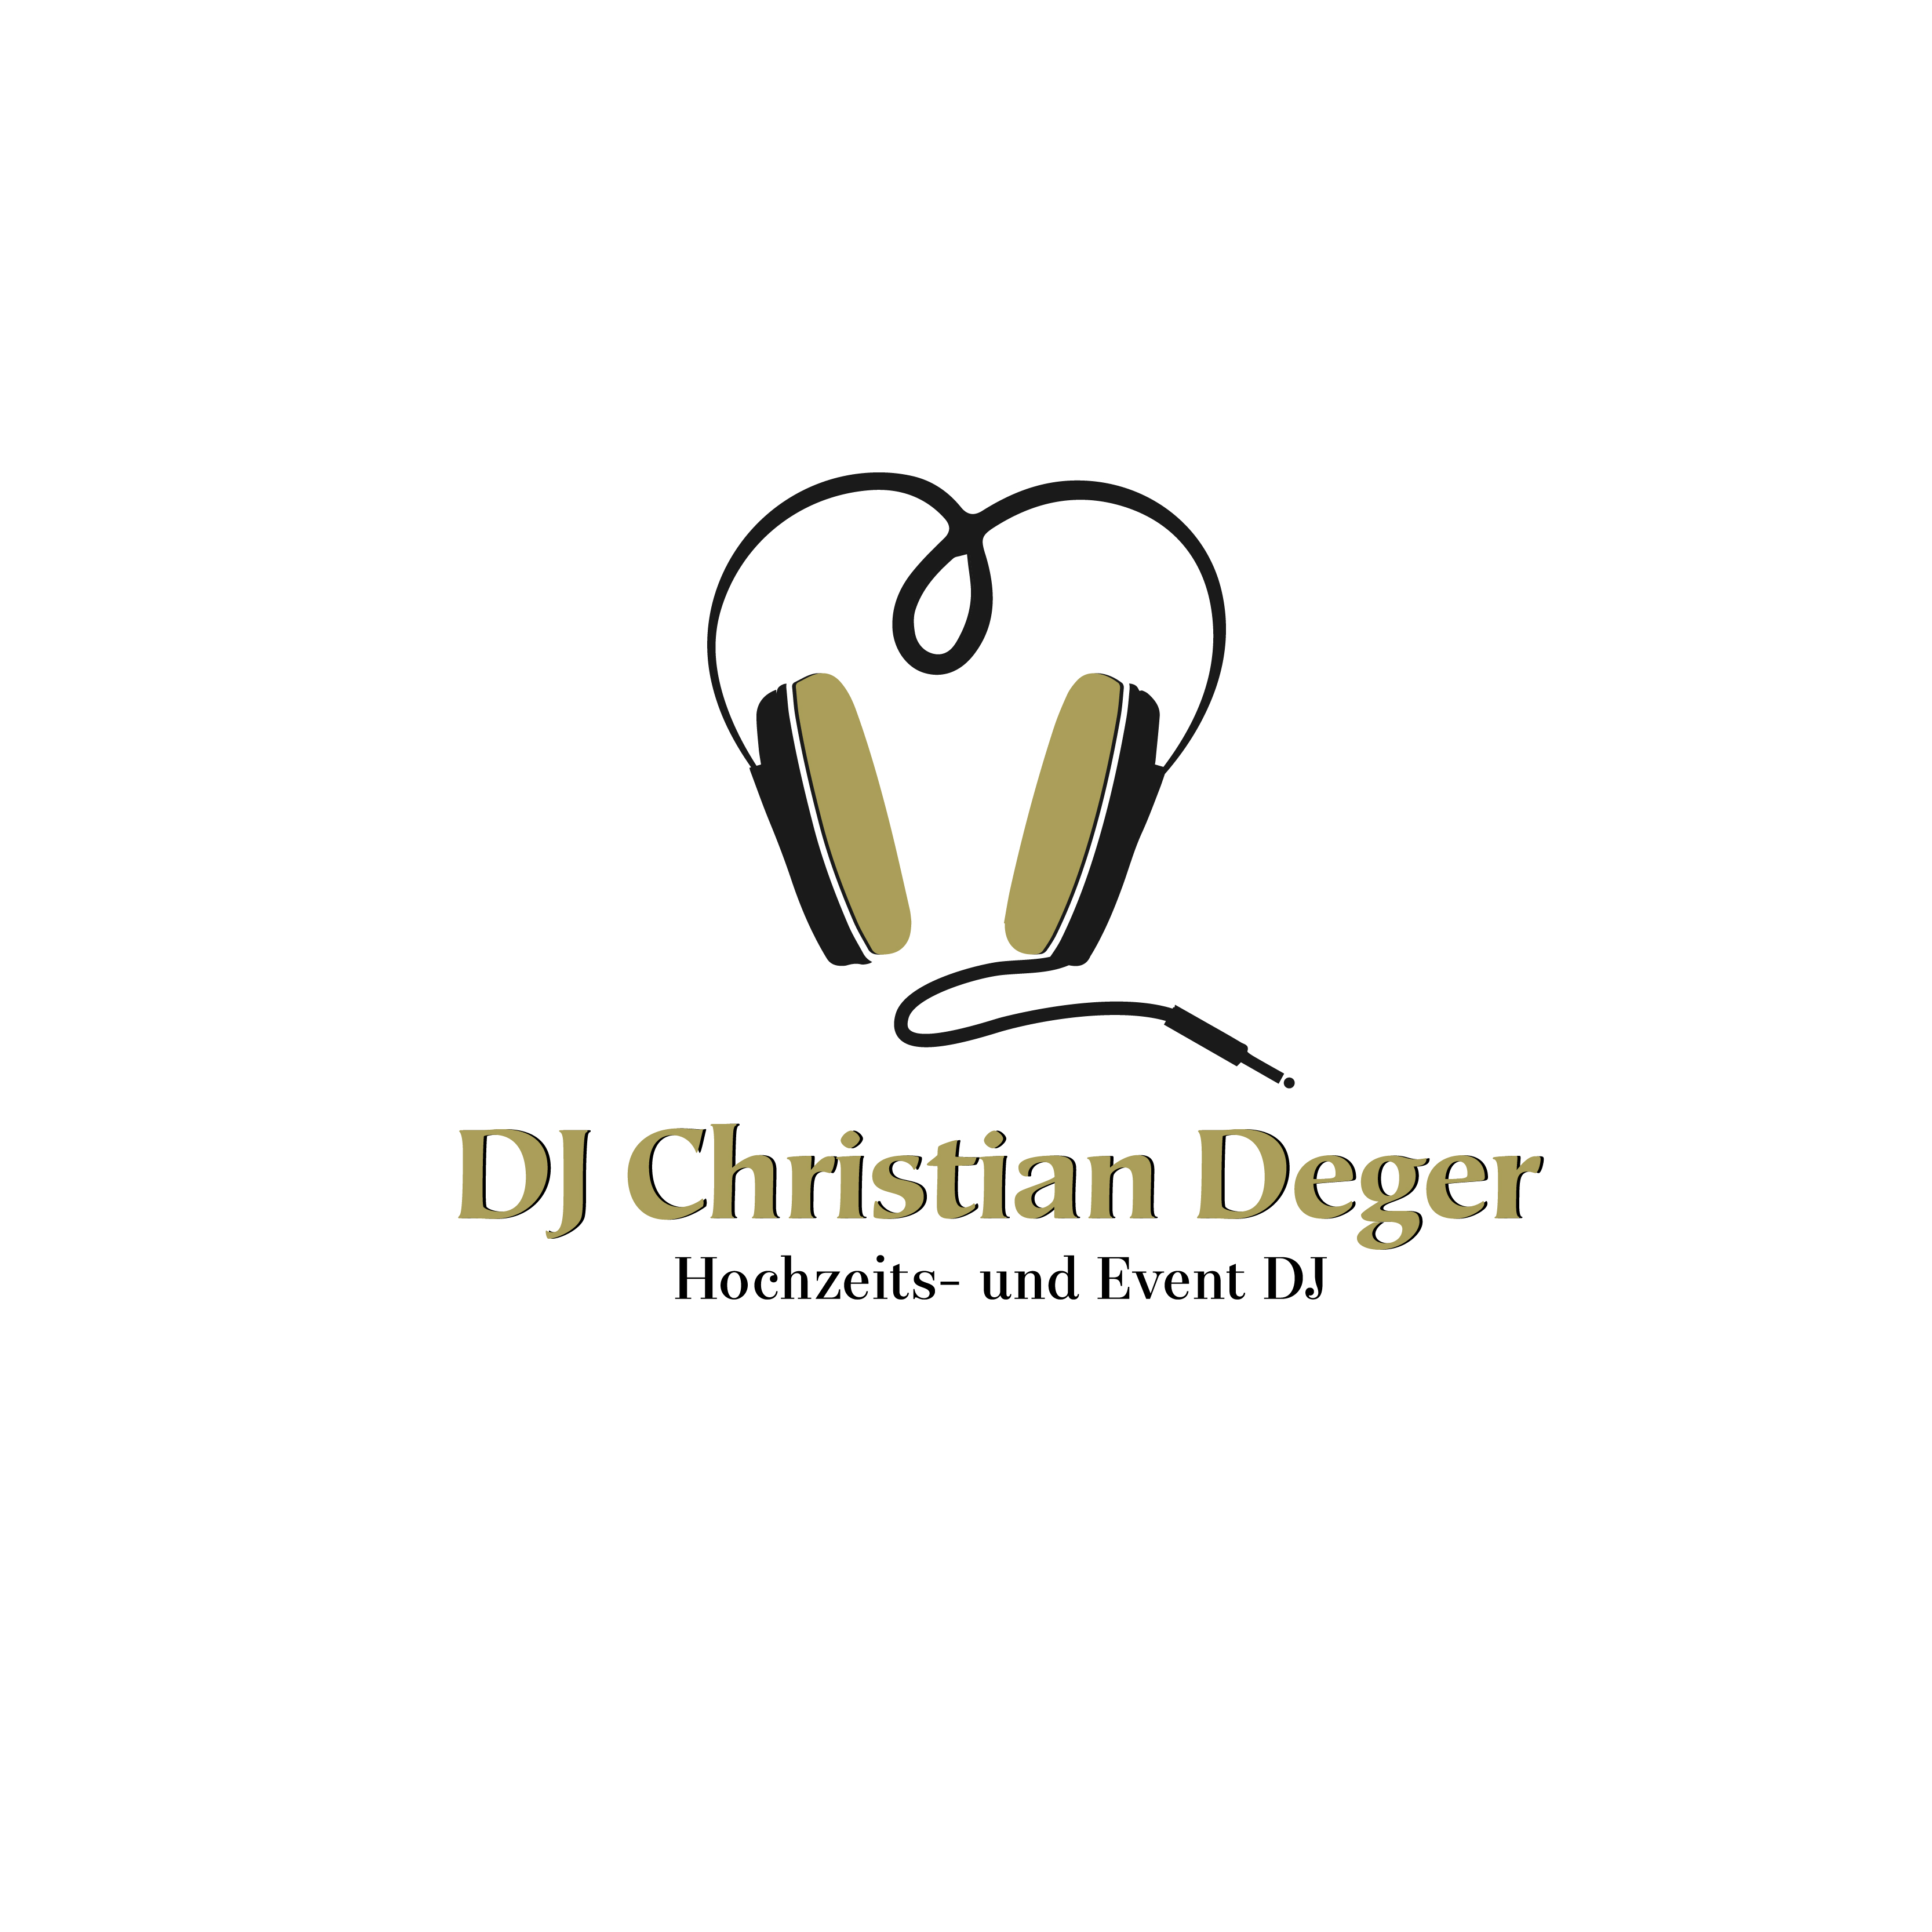 DJ Christian Deger